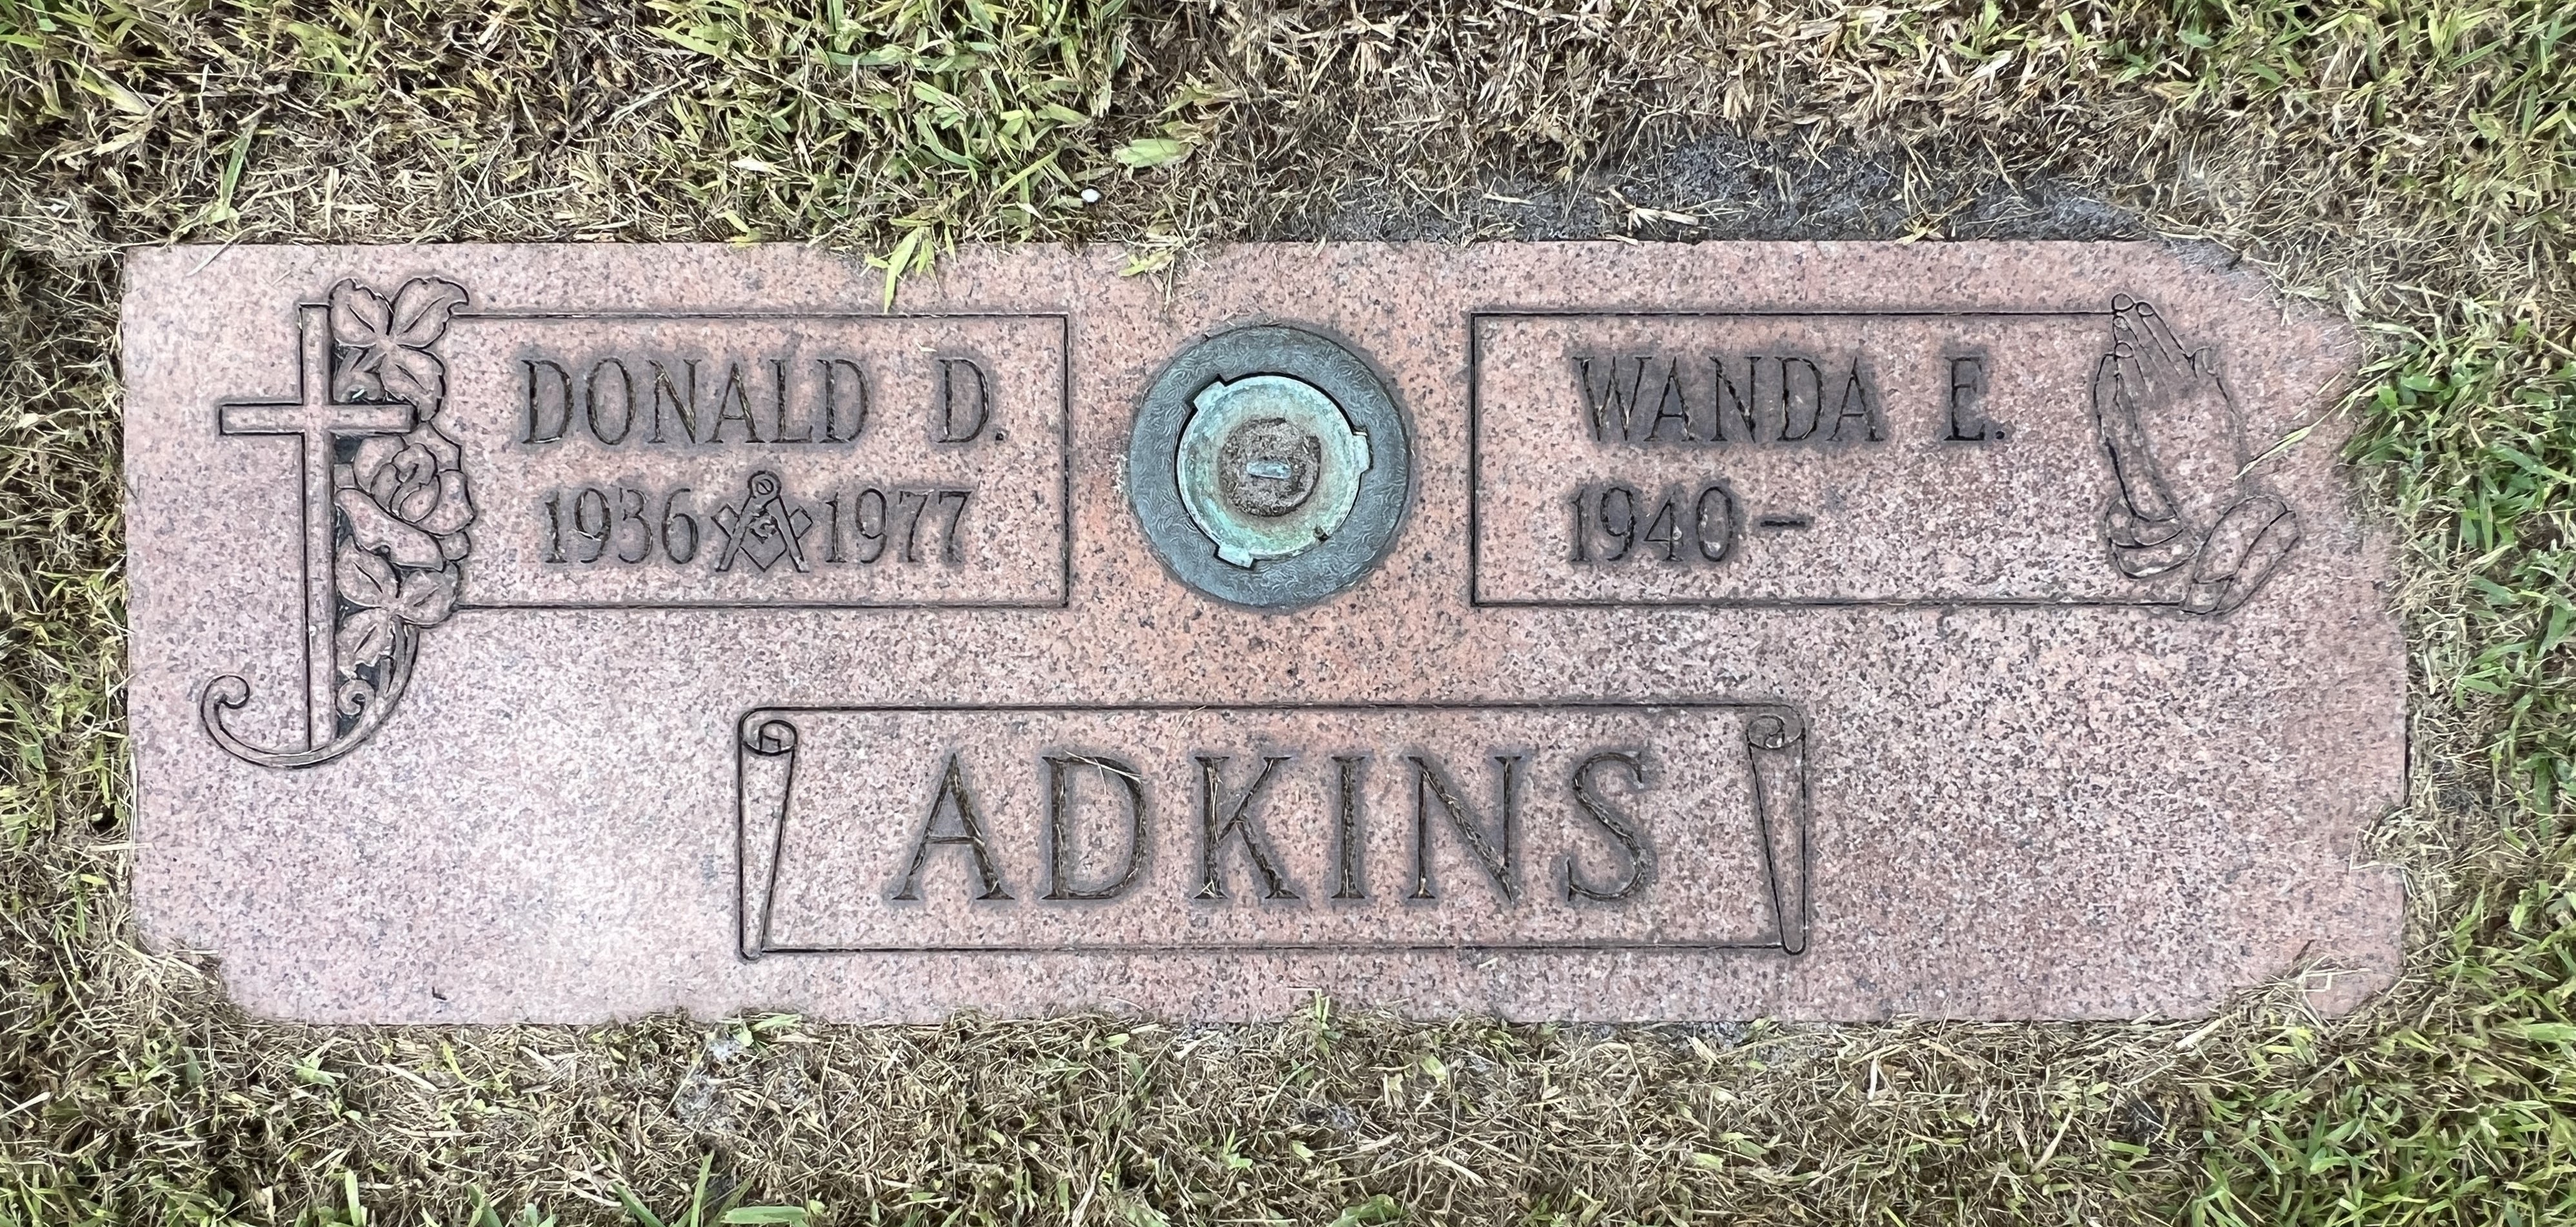 Wanda E Adkins